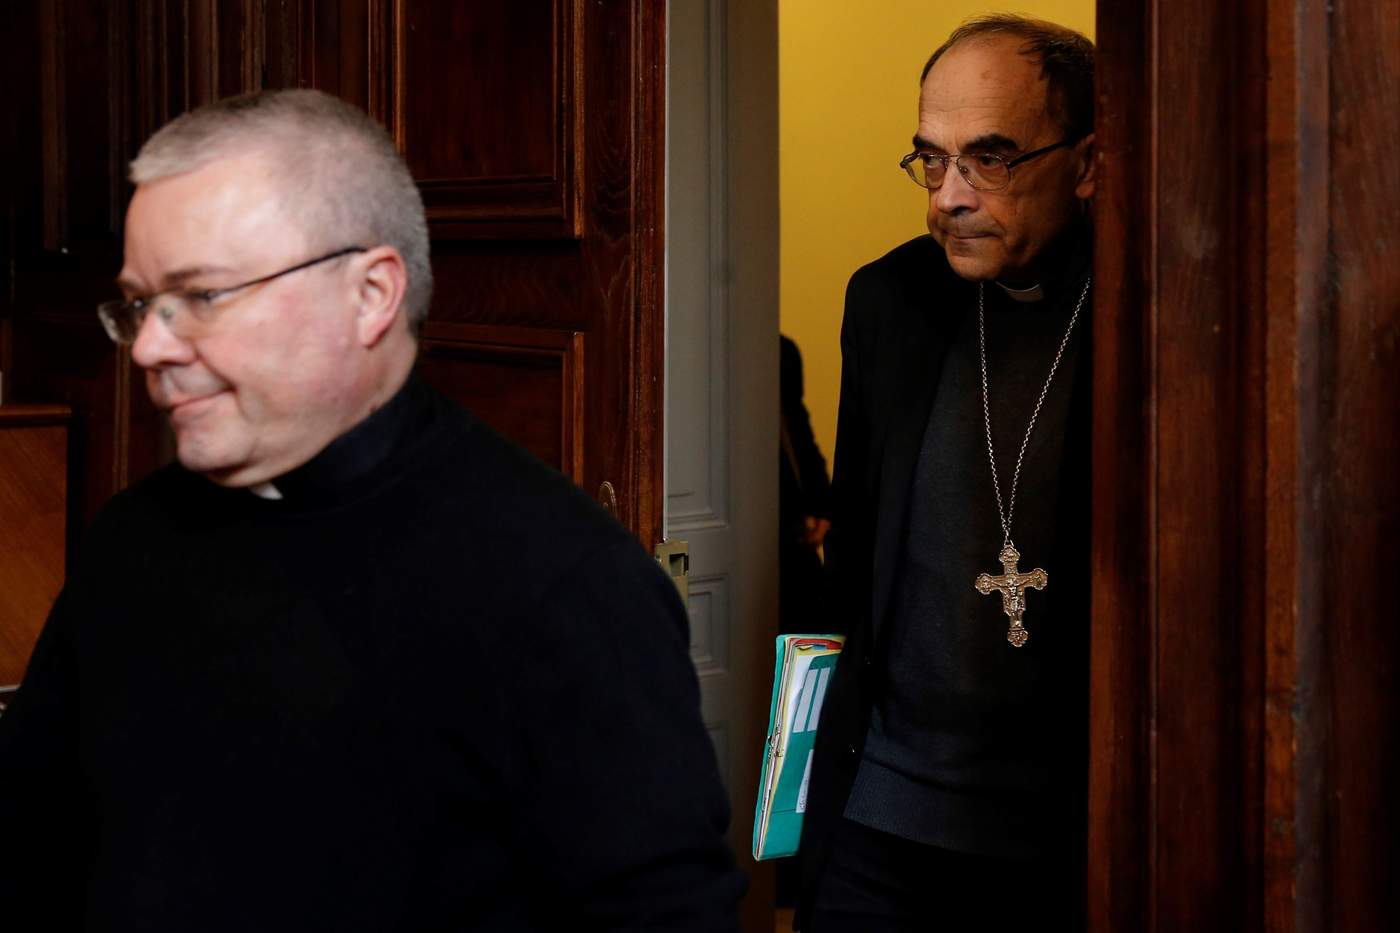 Dimite cardenal francés condenado por encubrir a cura pederasta